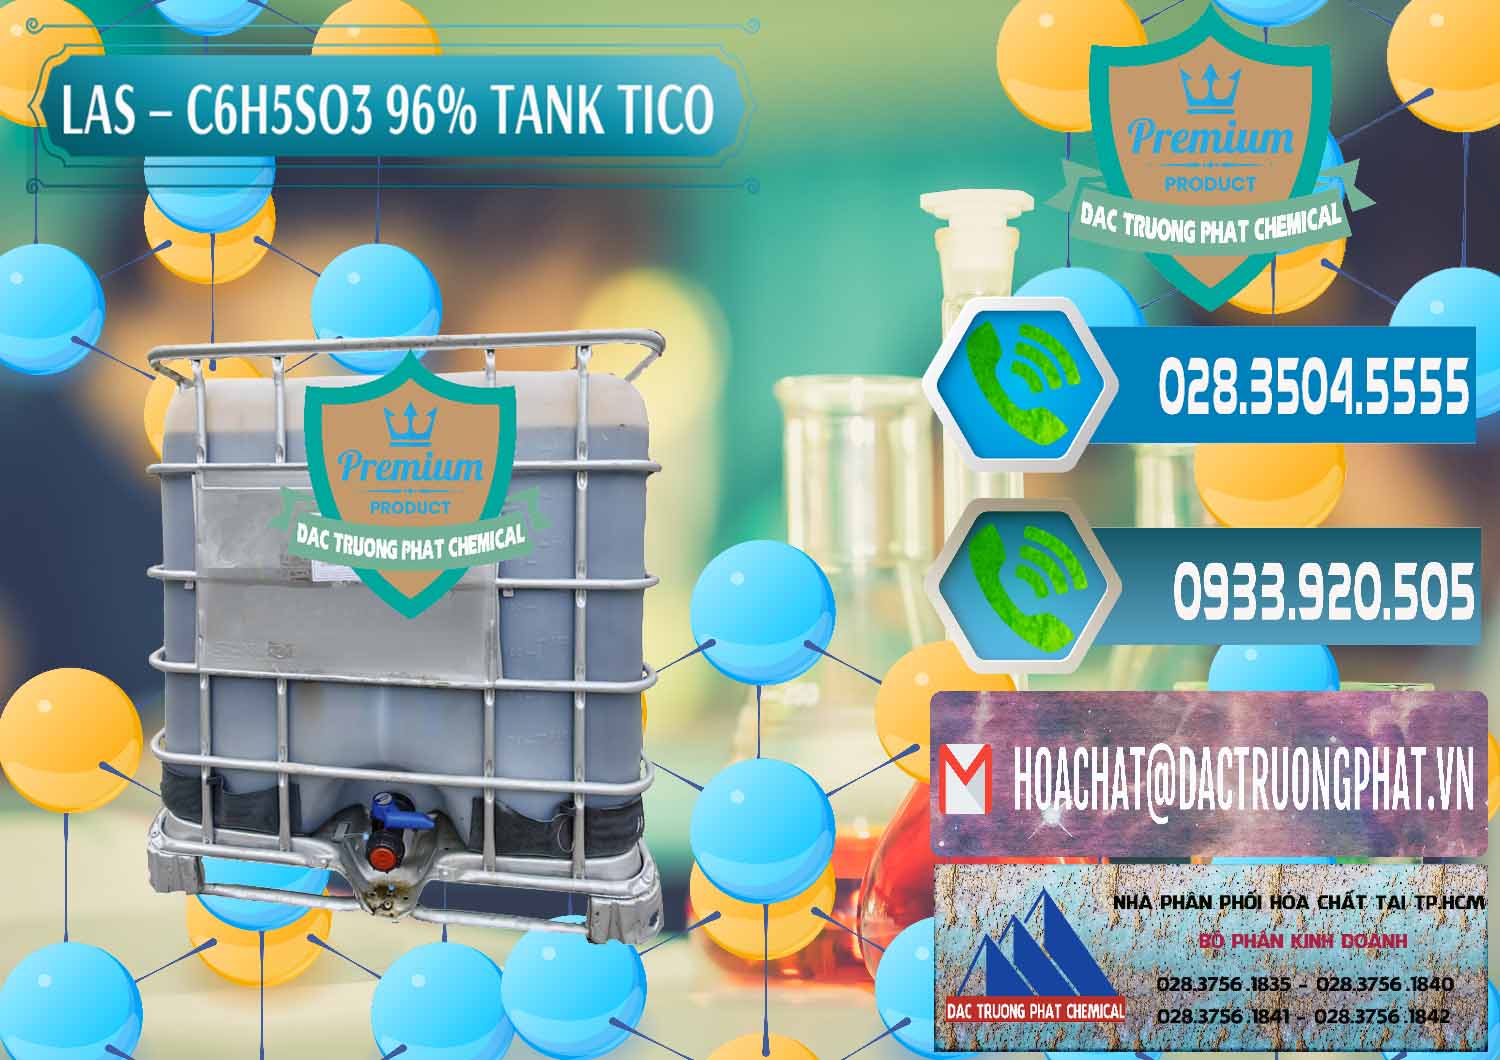 Cty chuyên cung cấp - bán Chất tạo bọt Las P Tico Tank IBC Bồn Việt Nam - 0488 - Cty chuyên phân phối - bán hóa chất tại TP.HCM - congtyhoachat.net